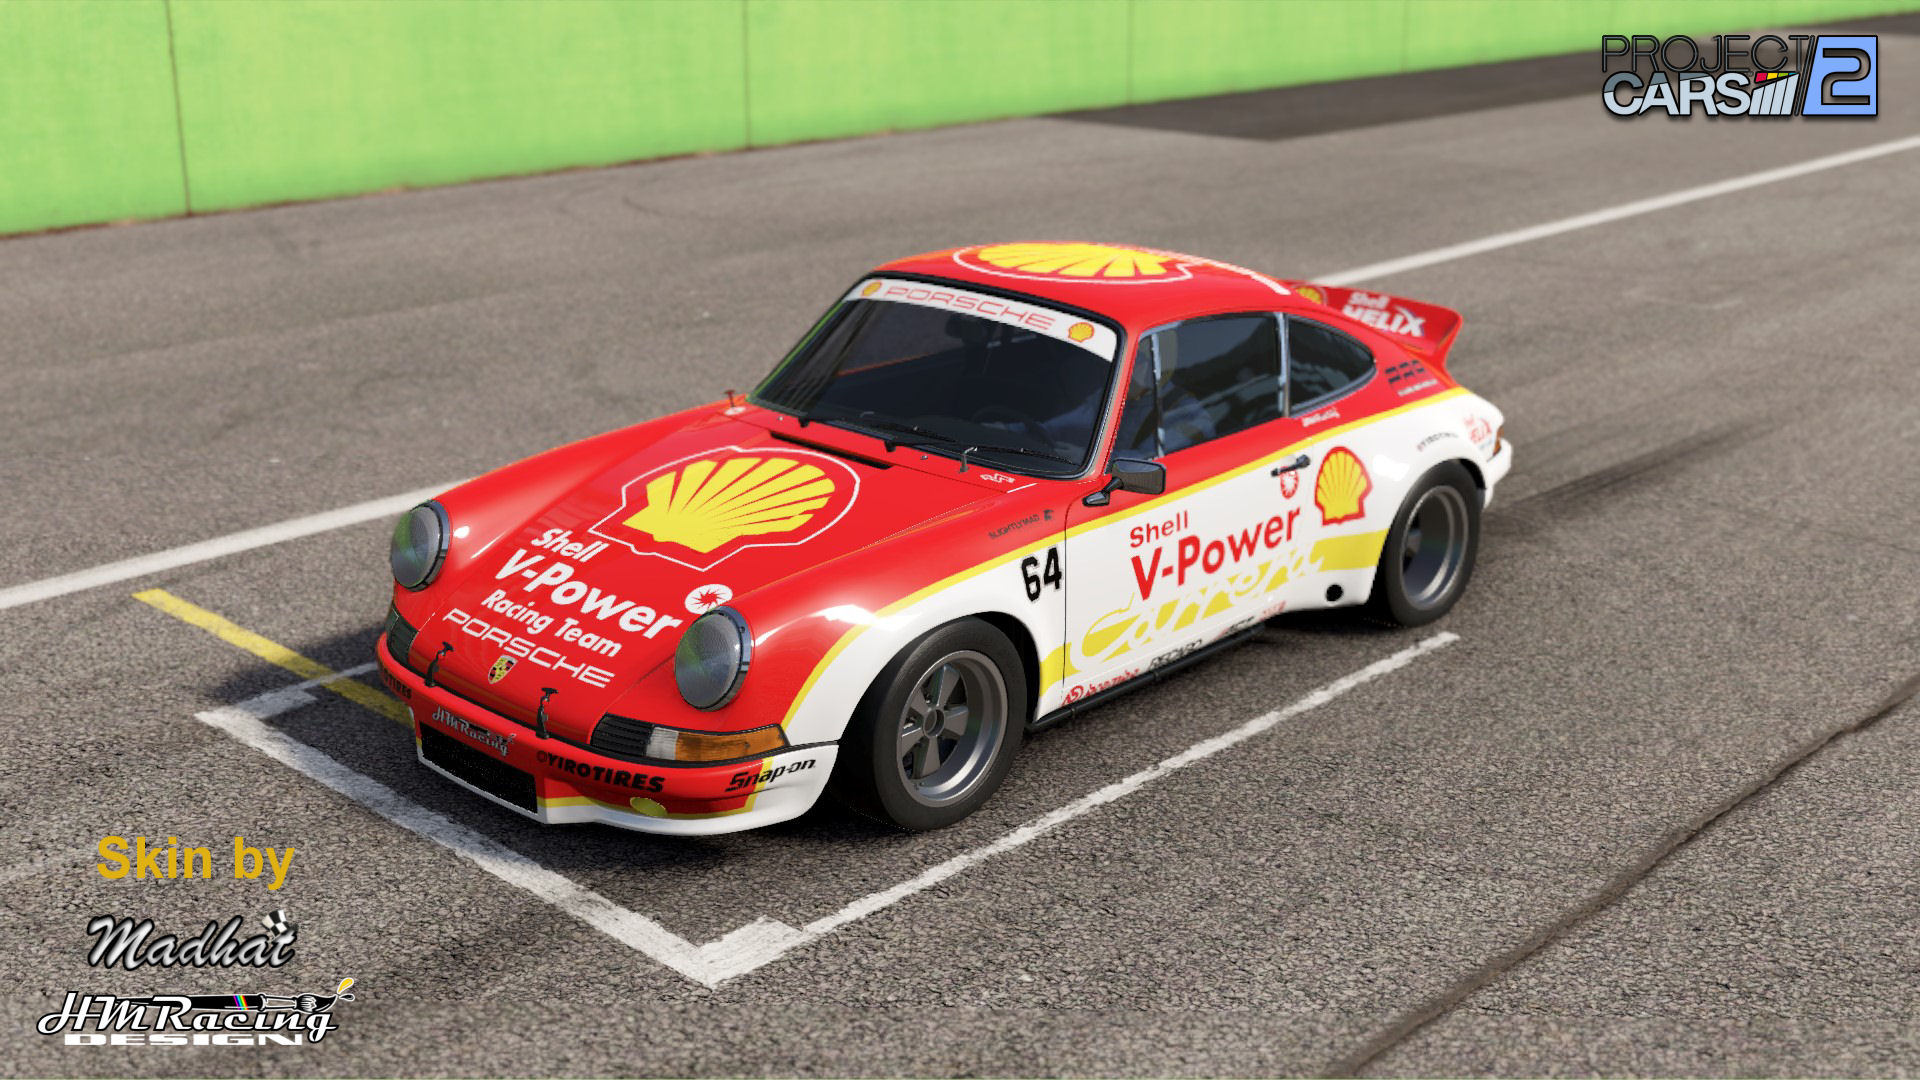 Shell Porsche 911 rsr73 01.jpg